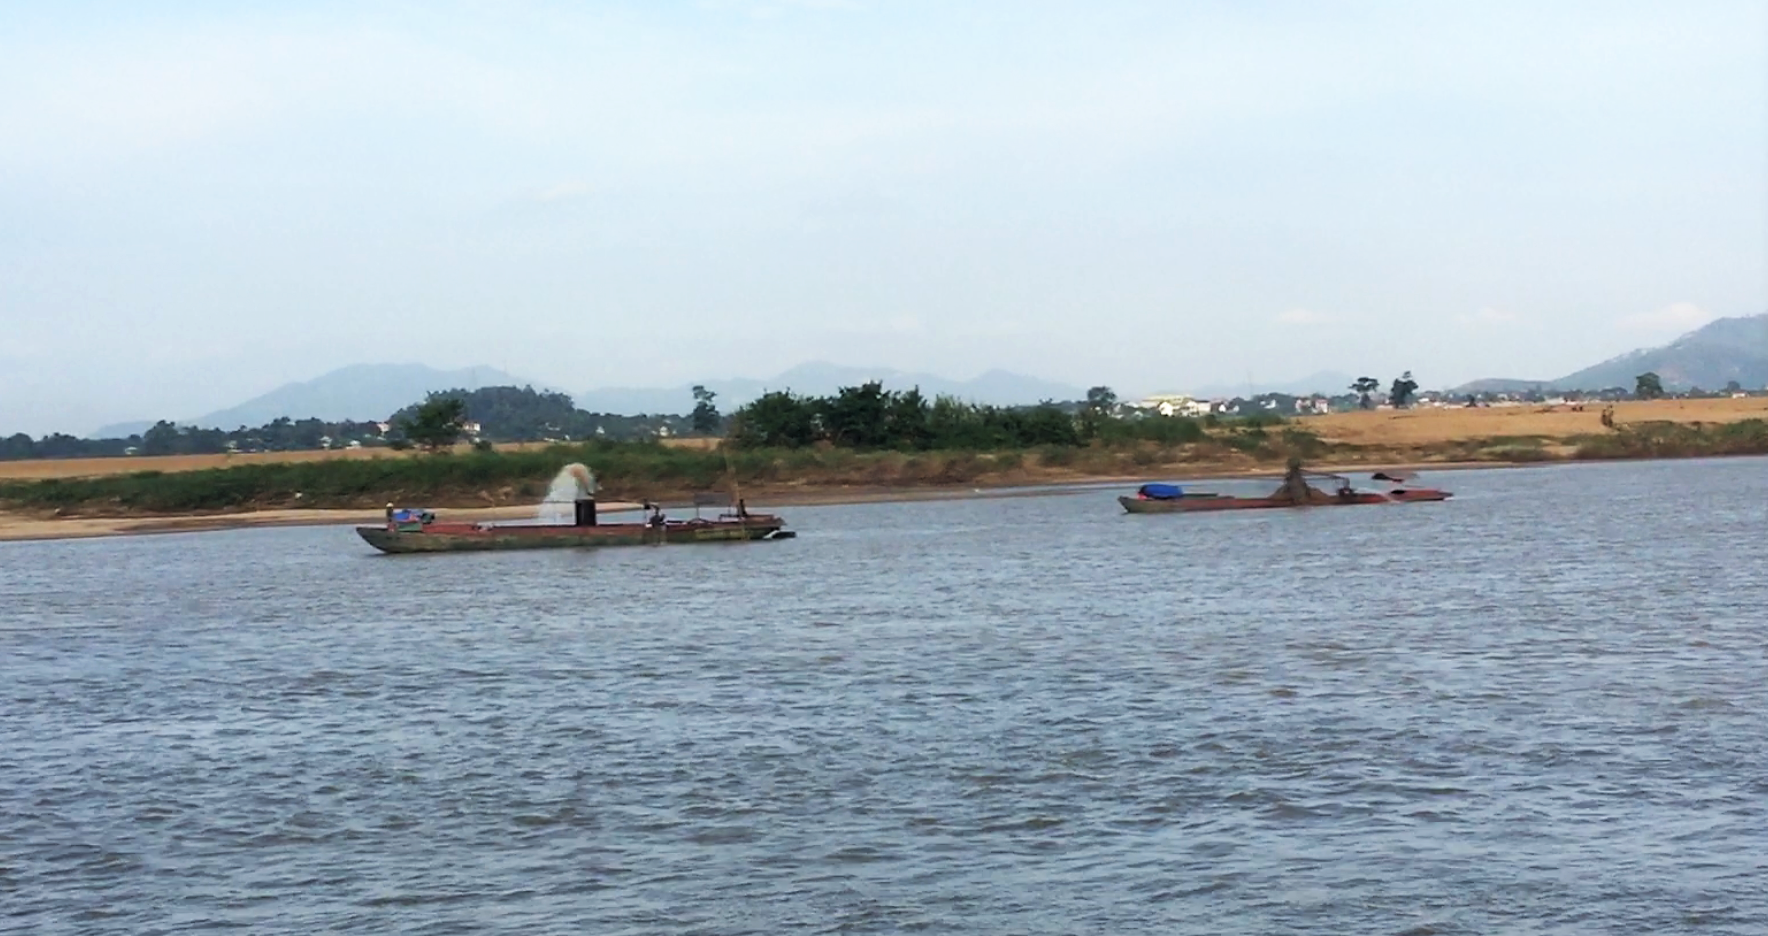 Những thuyền lớn ngang nhiên khai thác cát ban ngày trên sông Lam, ảnh được PV ghi nhận chiều ngày 16/10 tại đoạn sông chảy qua xóm Hà Long, xã Thanh Hà.